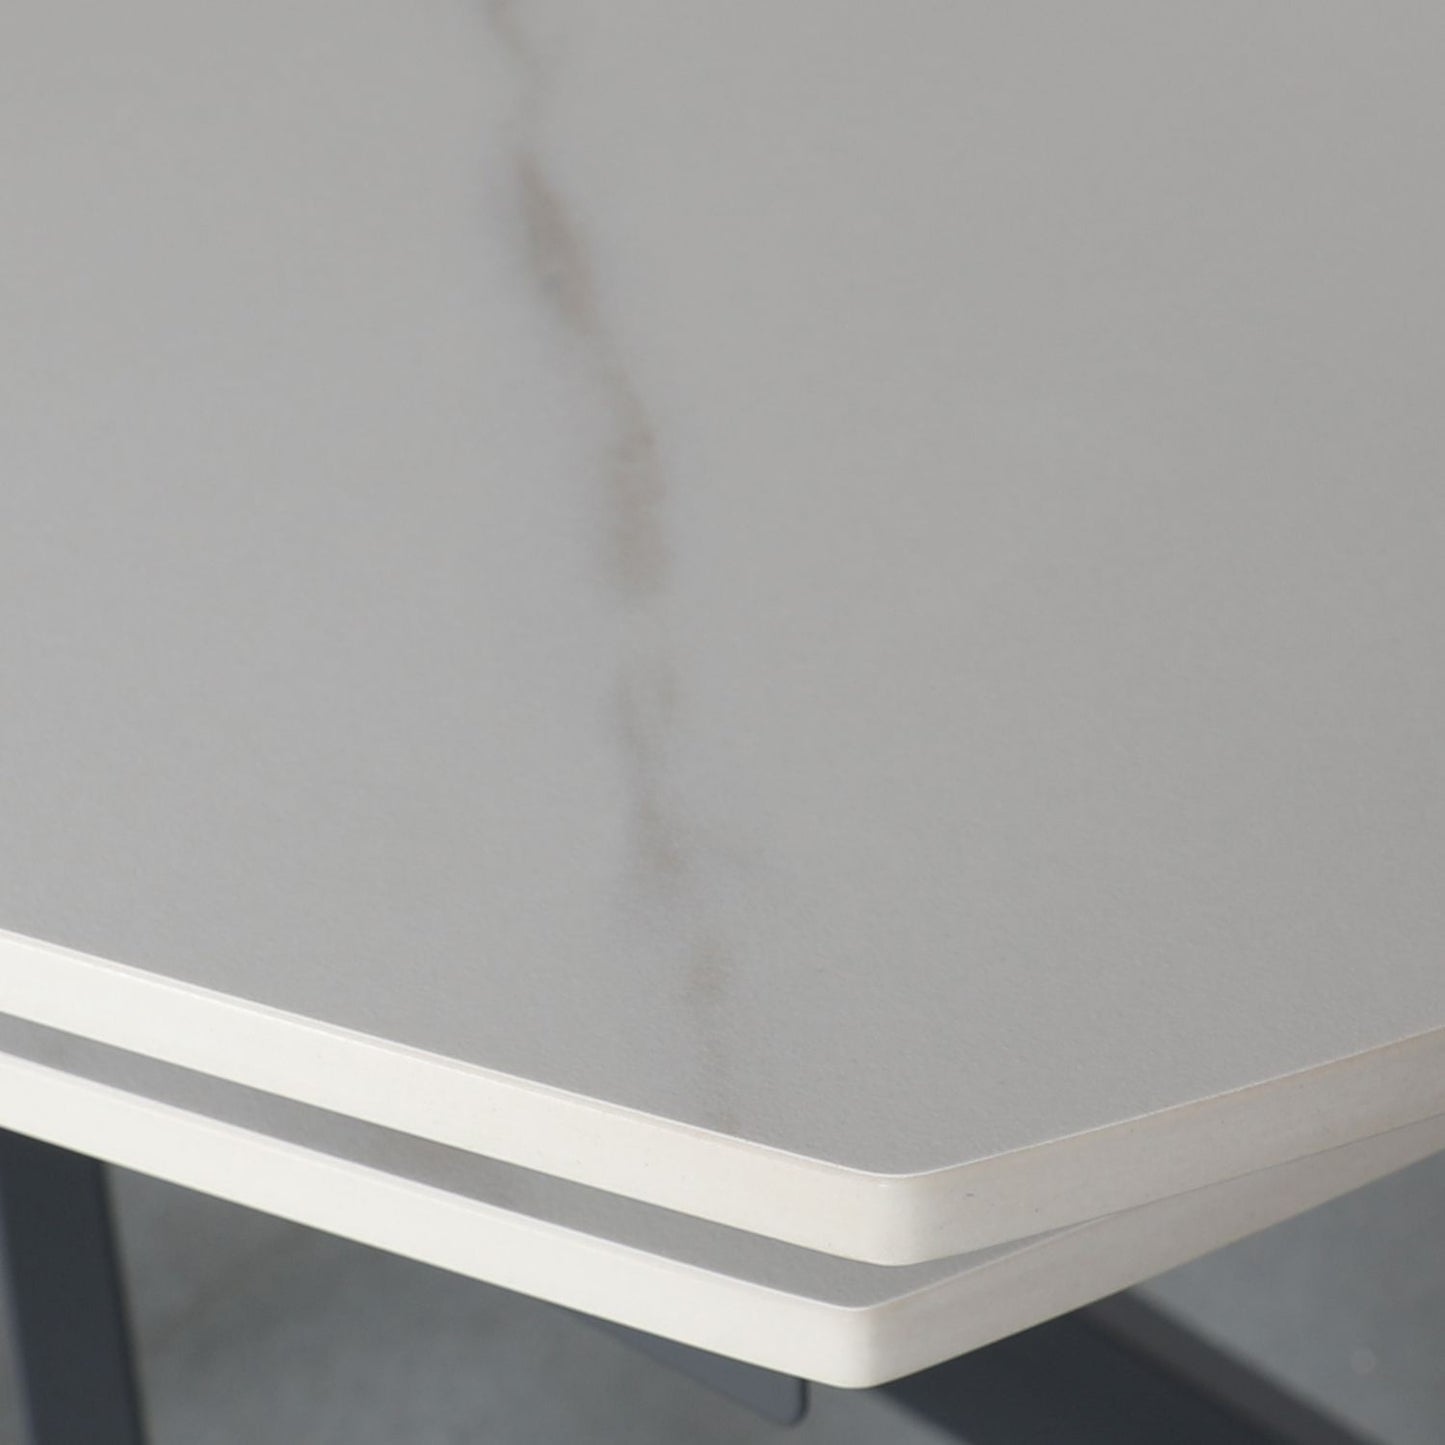 Sintered White Stone Dining Table - 140-200cm Extending